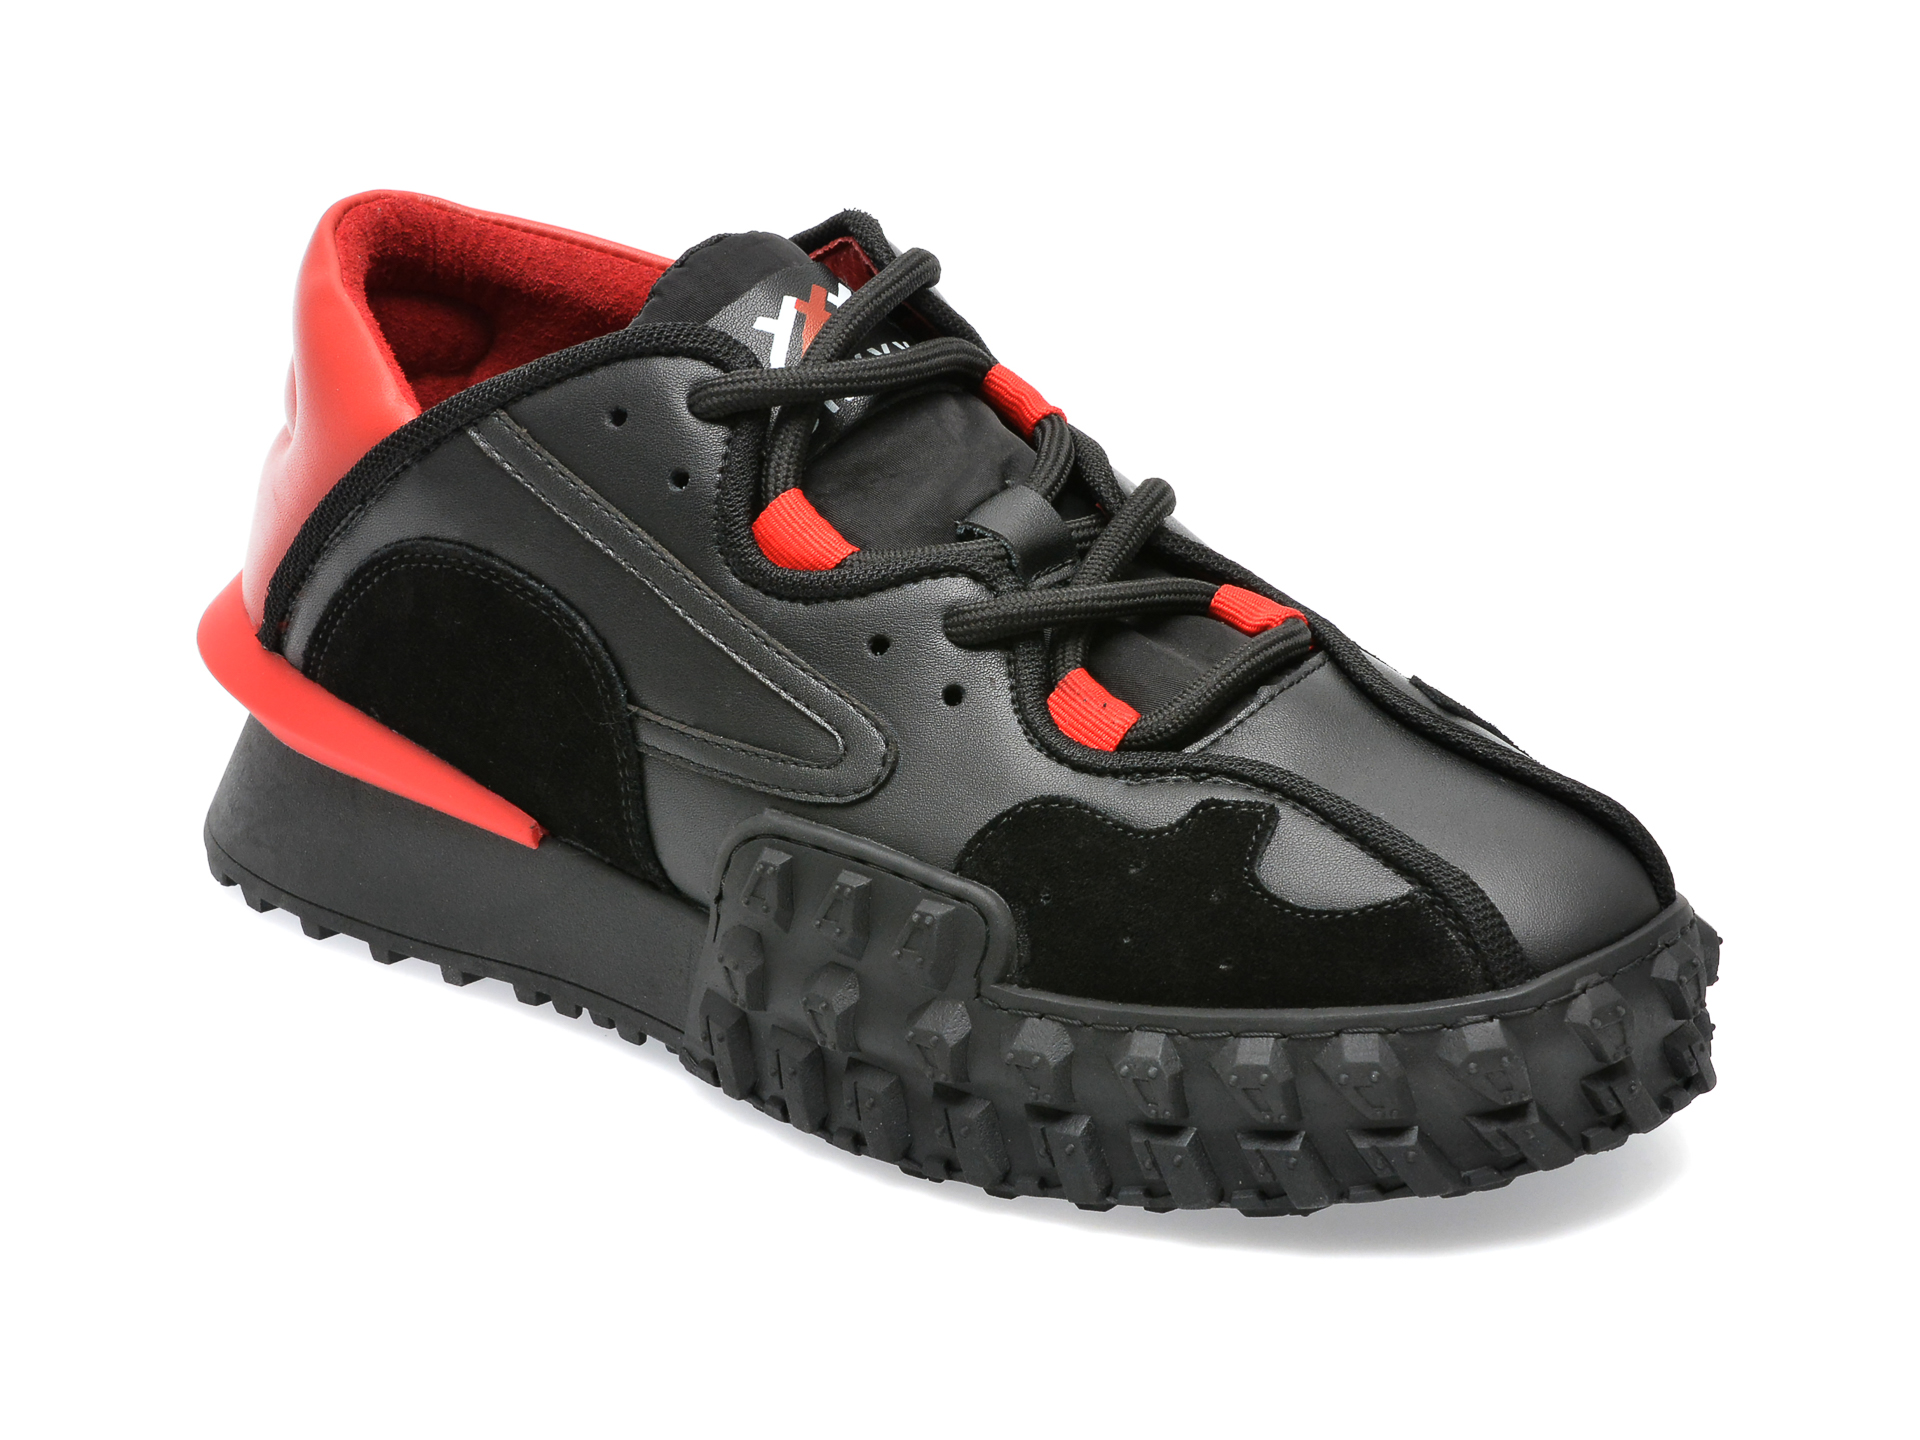 Pantofi sport GRYXX negri, LN189, din piele naturala